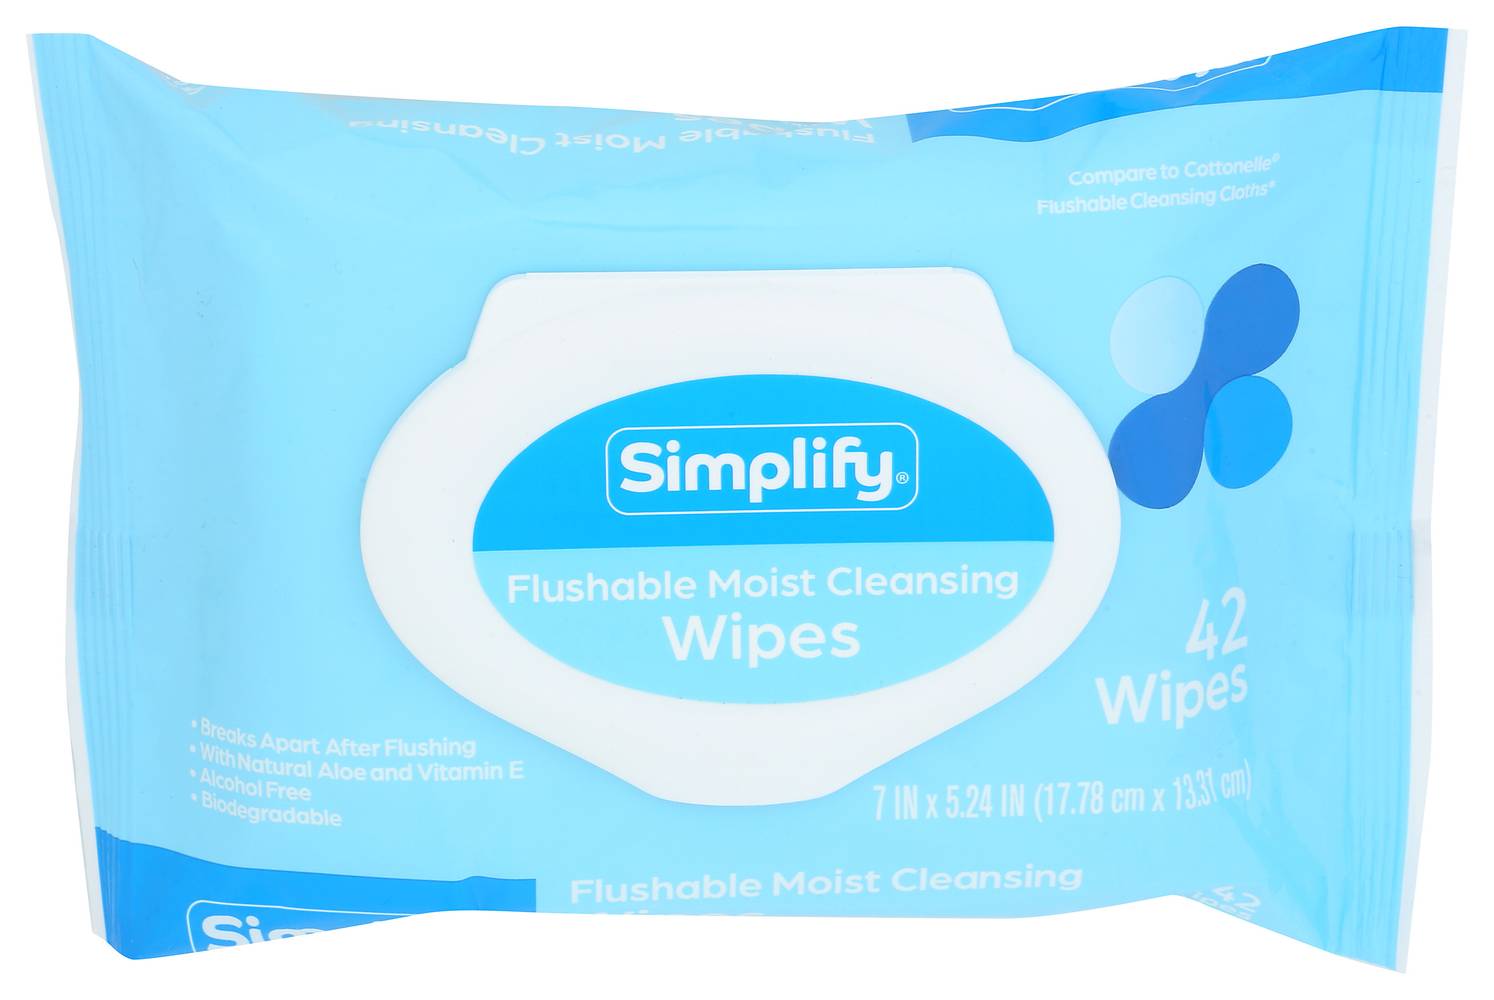 Simplify Flushable Moist Wipes Flip Top (7 in x 5.24 in )